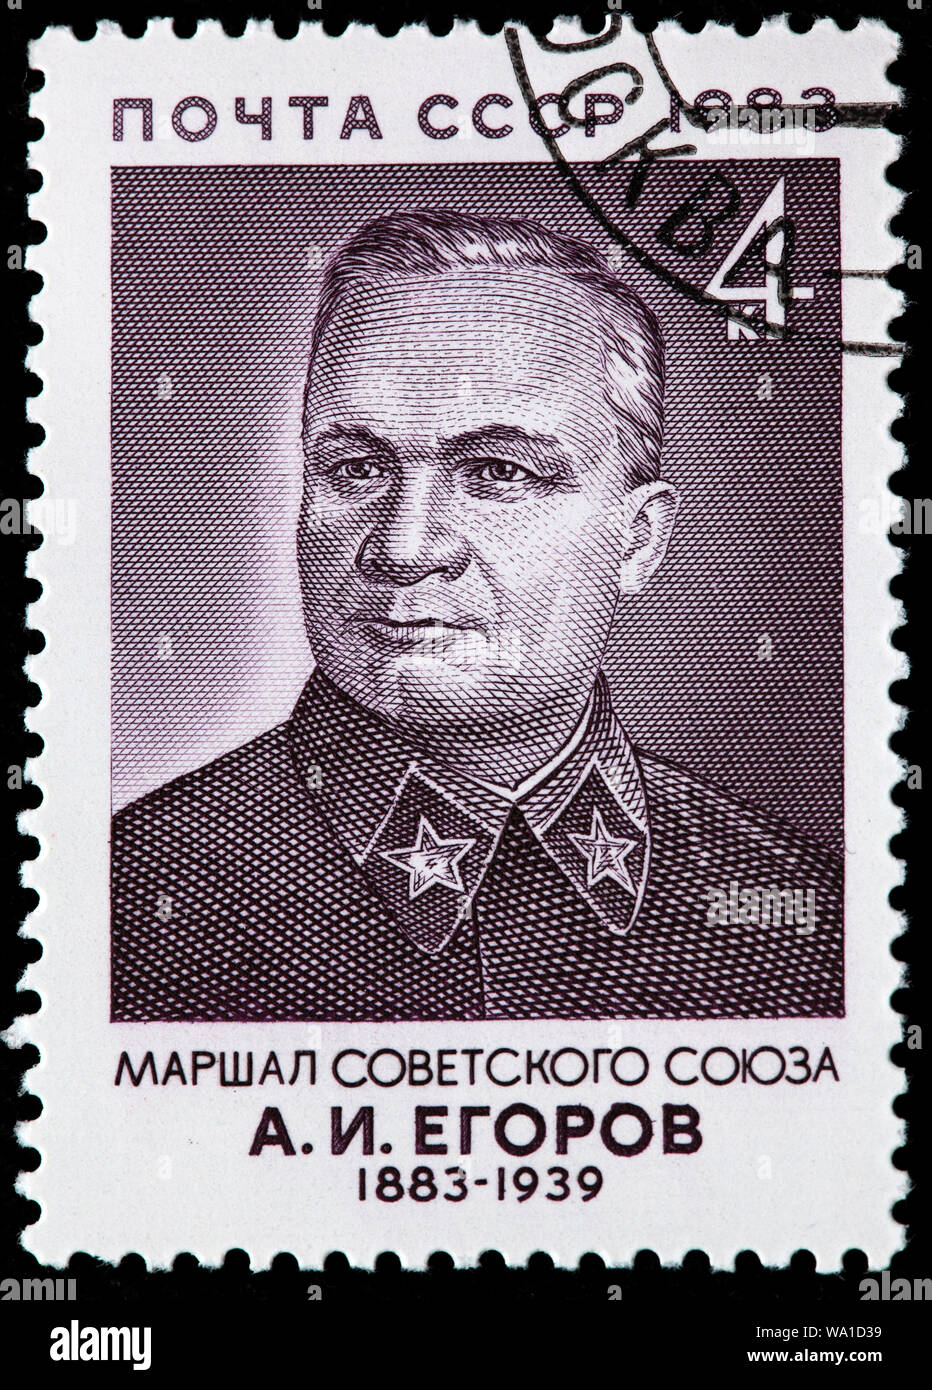 Alexander Jegorow (1883-1939), sowjetischer Militärführer, Marschall der Sowjetunion, Briefmarke, Russland, UDSSR, 1983 Stockfoto